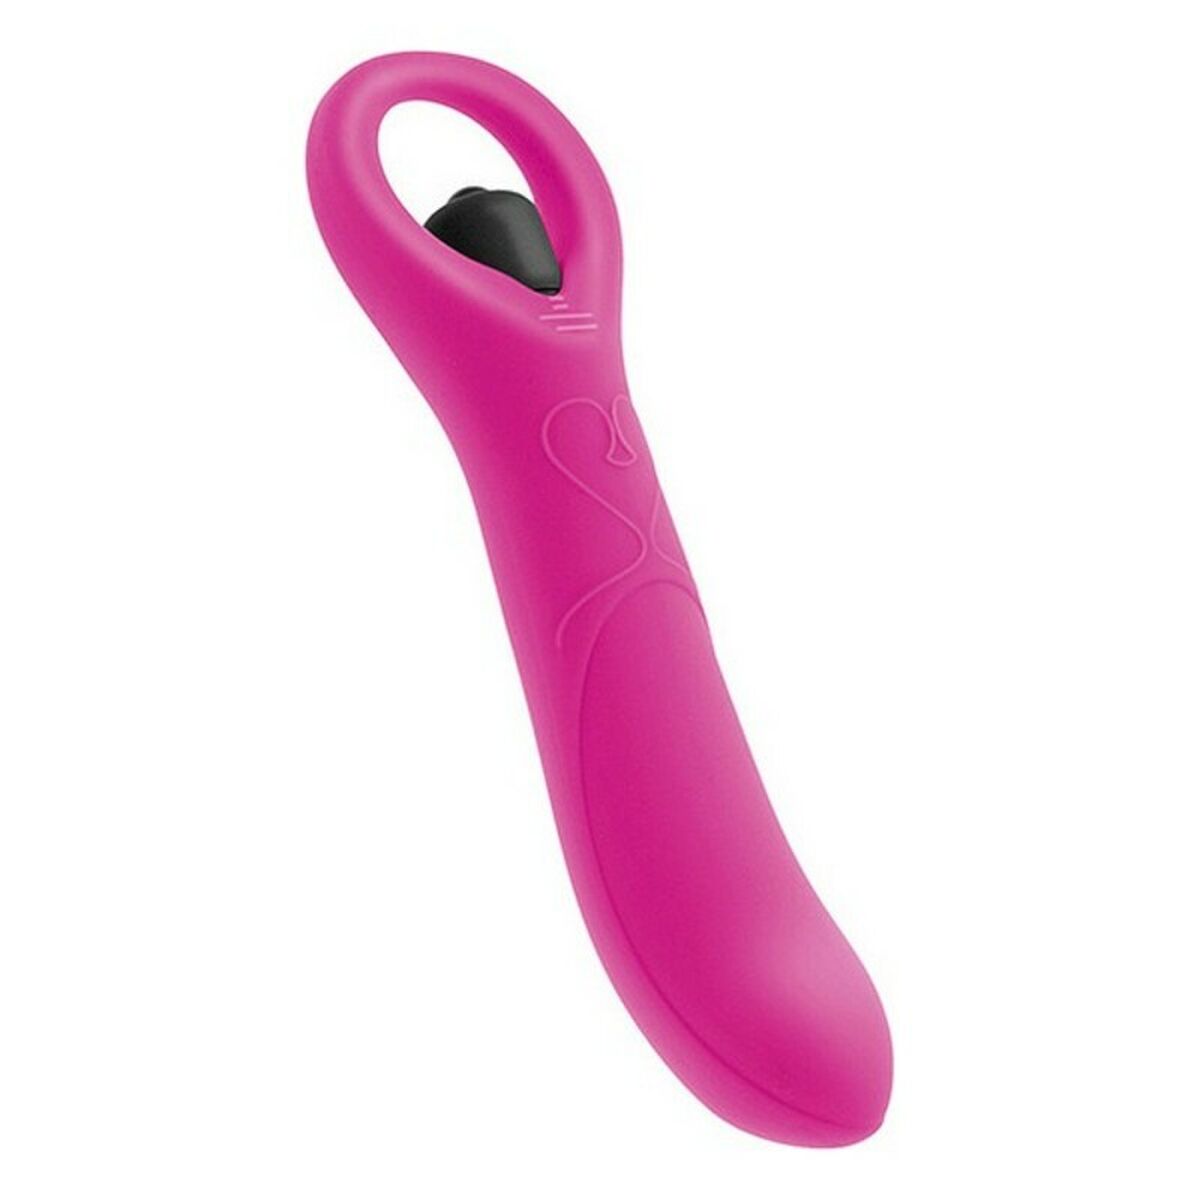 Kaufe G-Punkt Vibrator S Pleasures Direect Pink Fuchsia bei AWK Flagship um € 33.00